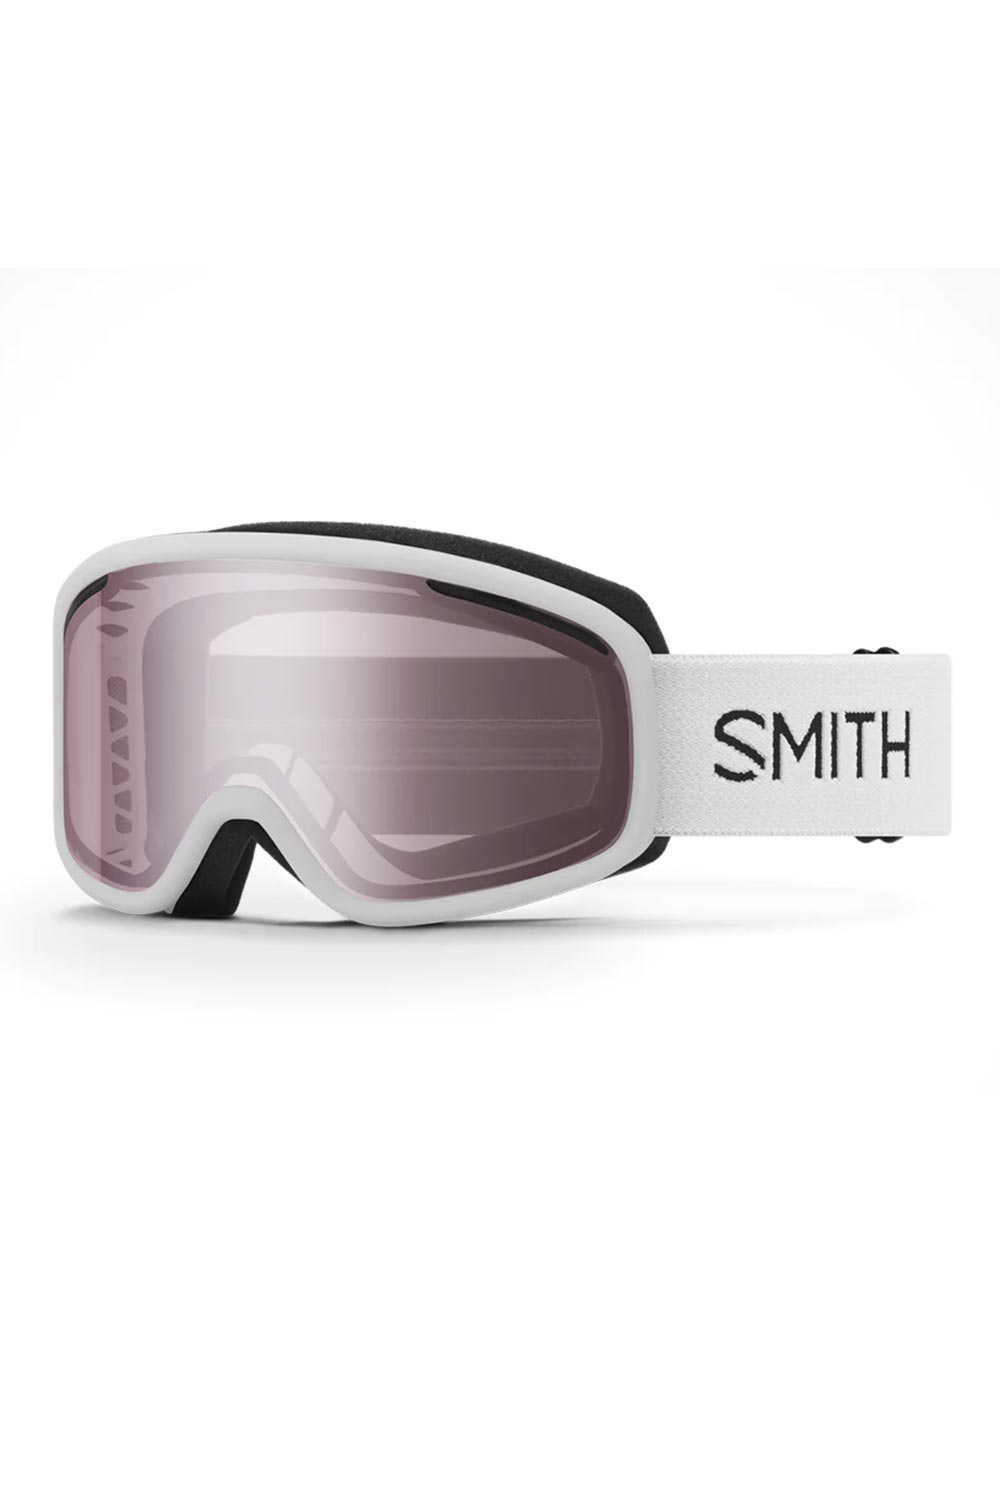 Smith ski/snowboard goggles, white strap ignitor mirror lens